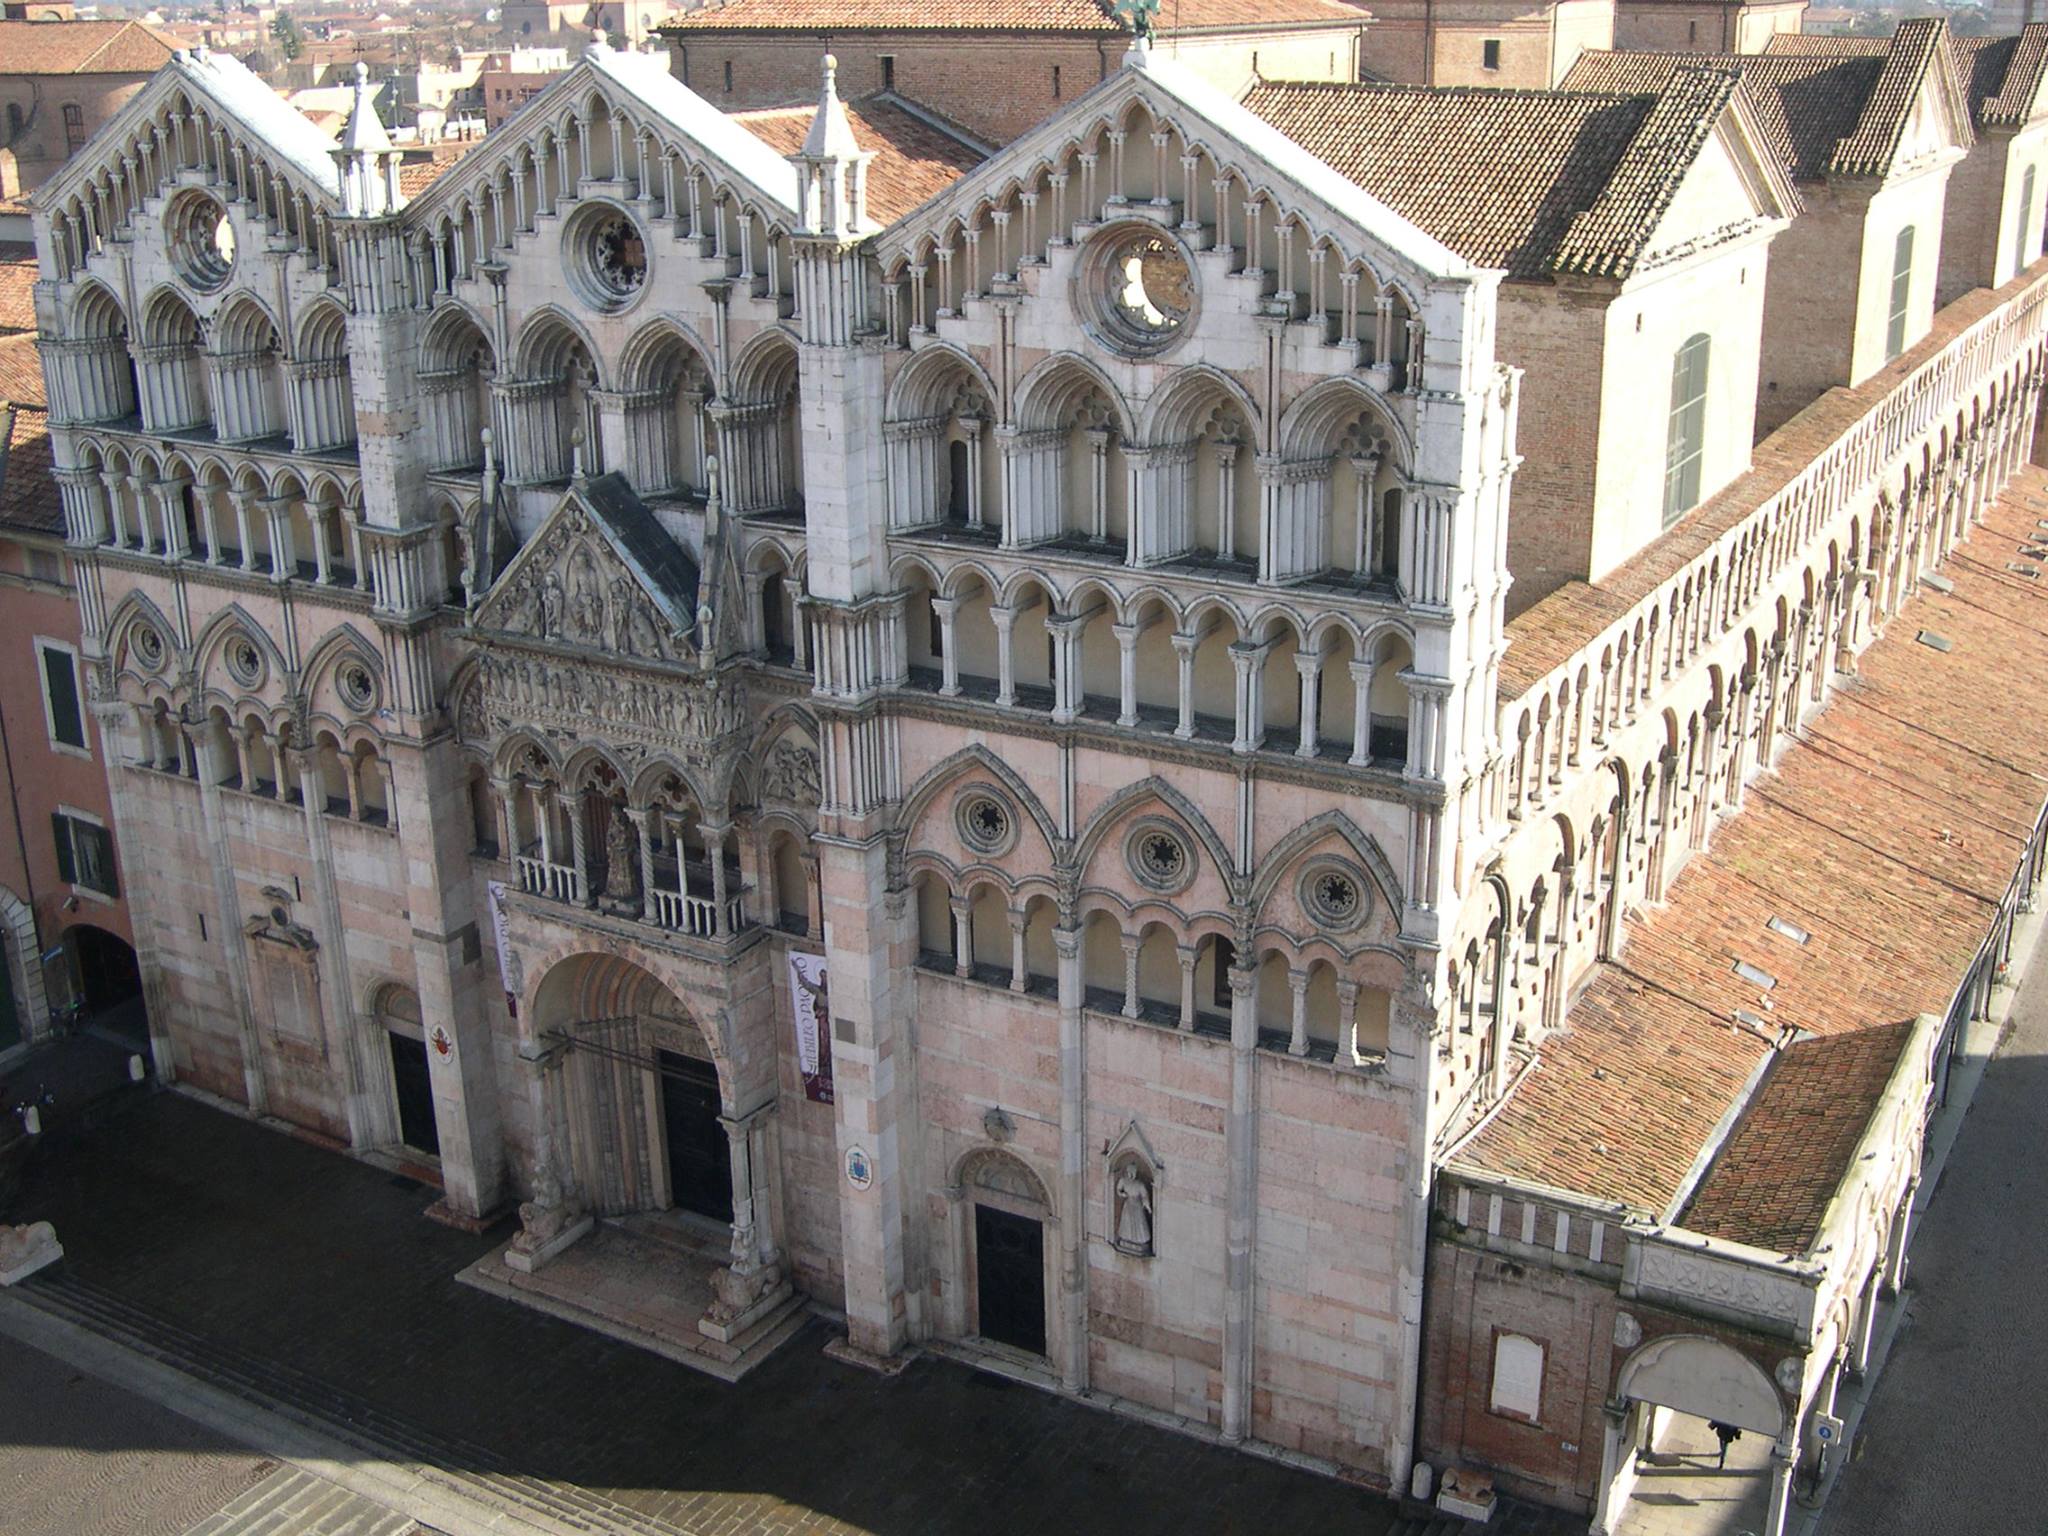 Kathedrale von Ferrara